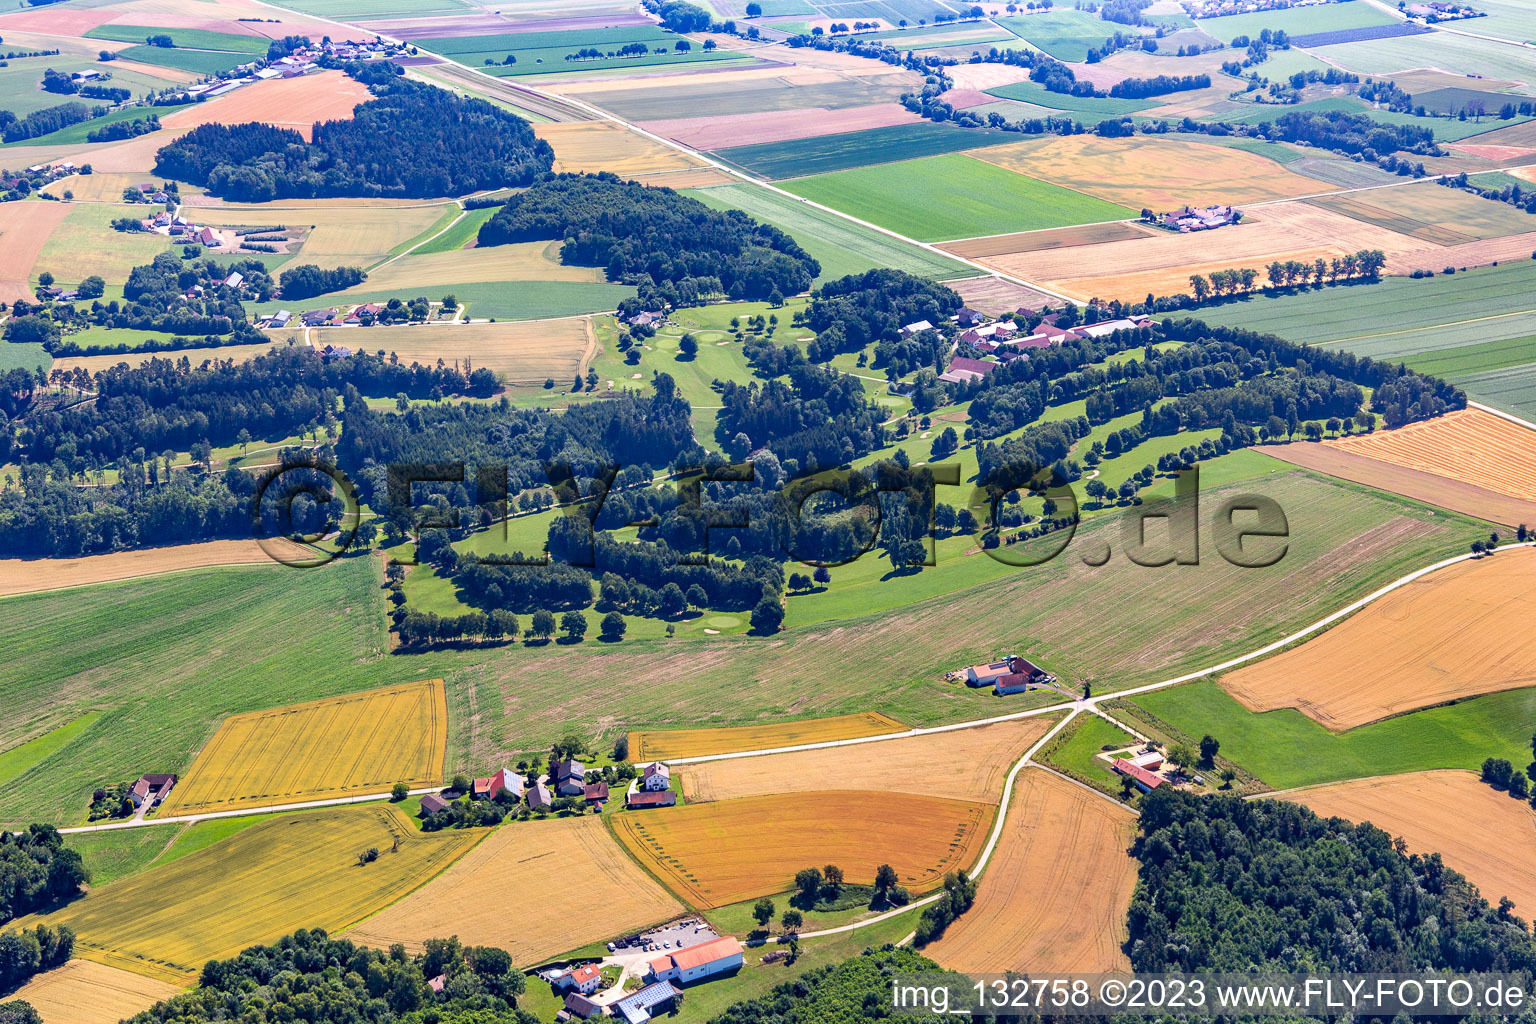 Luftbild von Golf Club Schloßberg e.V in Reisbach im Bundesland Bayern, Deutschland